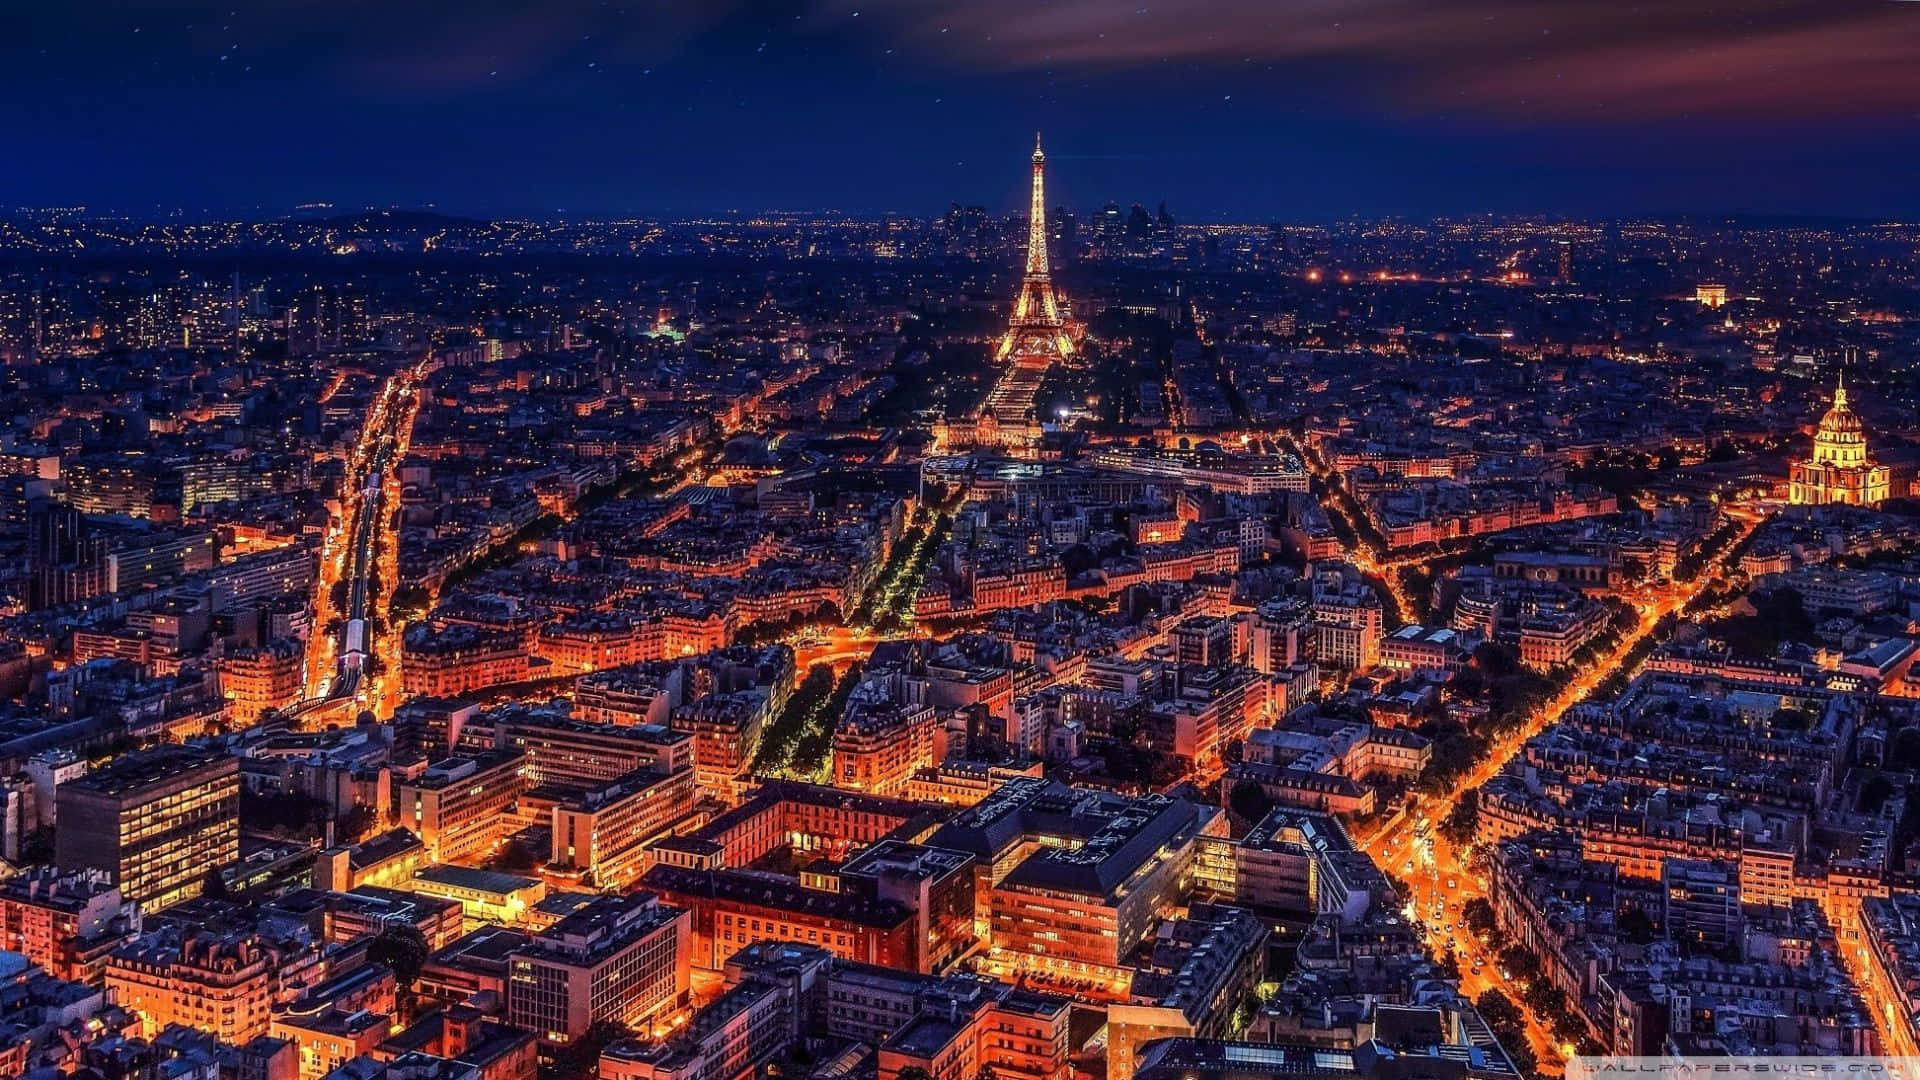 Lamajestuosa Torre Eiffel Iluminada Por La Noche En París Fondo de pantalla